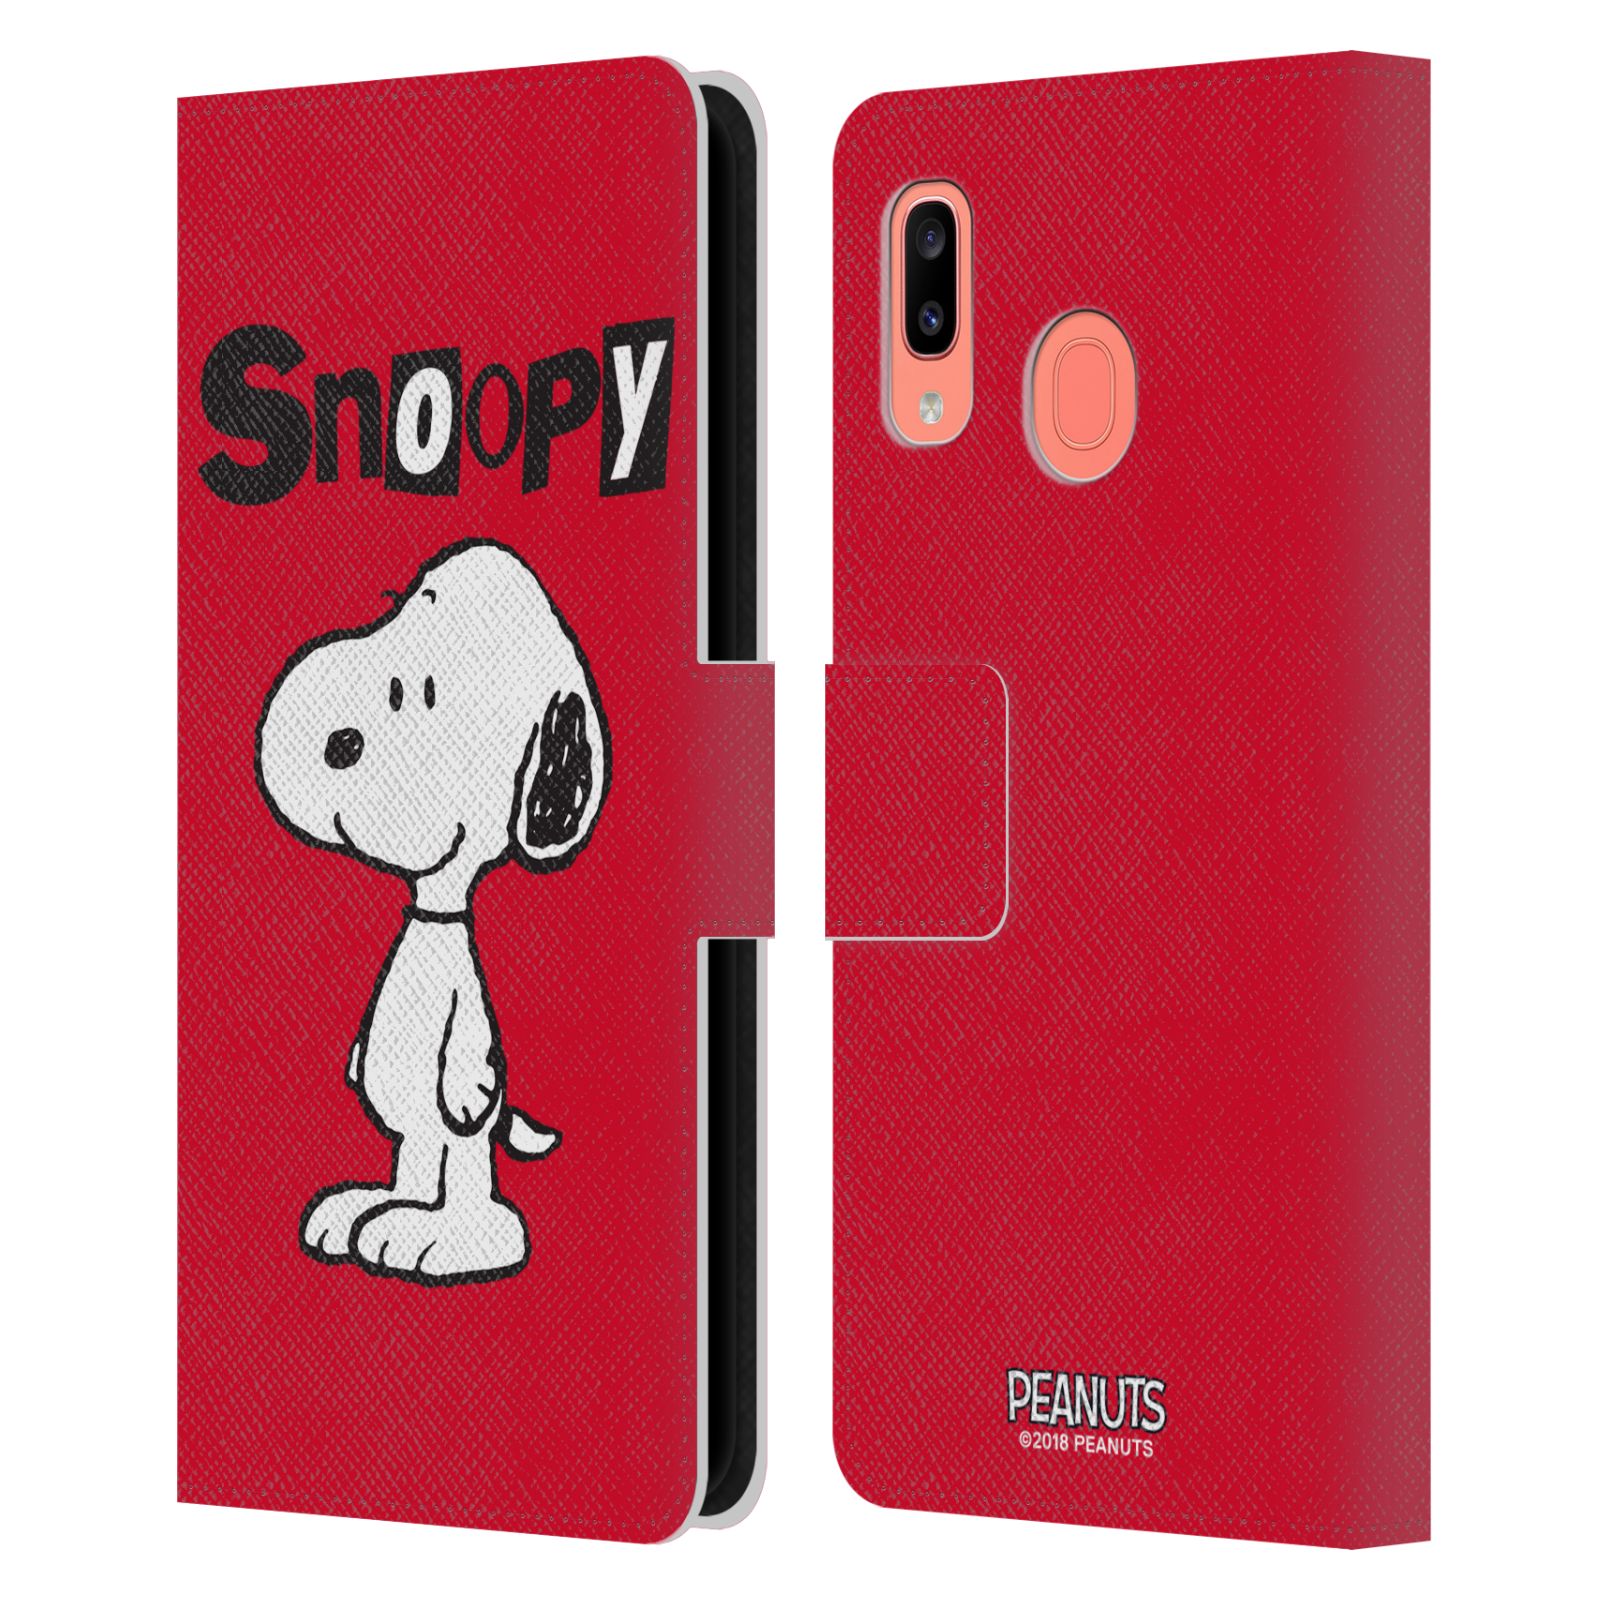 Pouzdro na mobil Samsung Galaxy A20 / Galaxy A30 - HEAD CASE - Peanuts - Snoopy červená